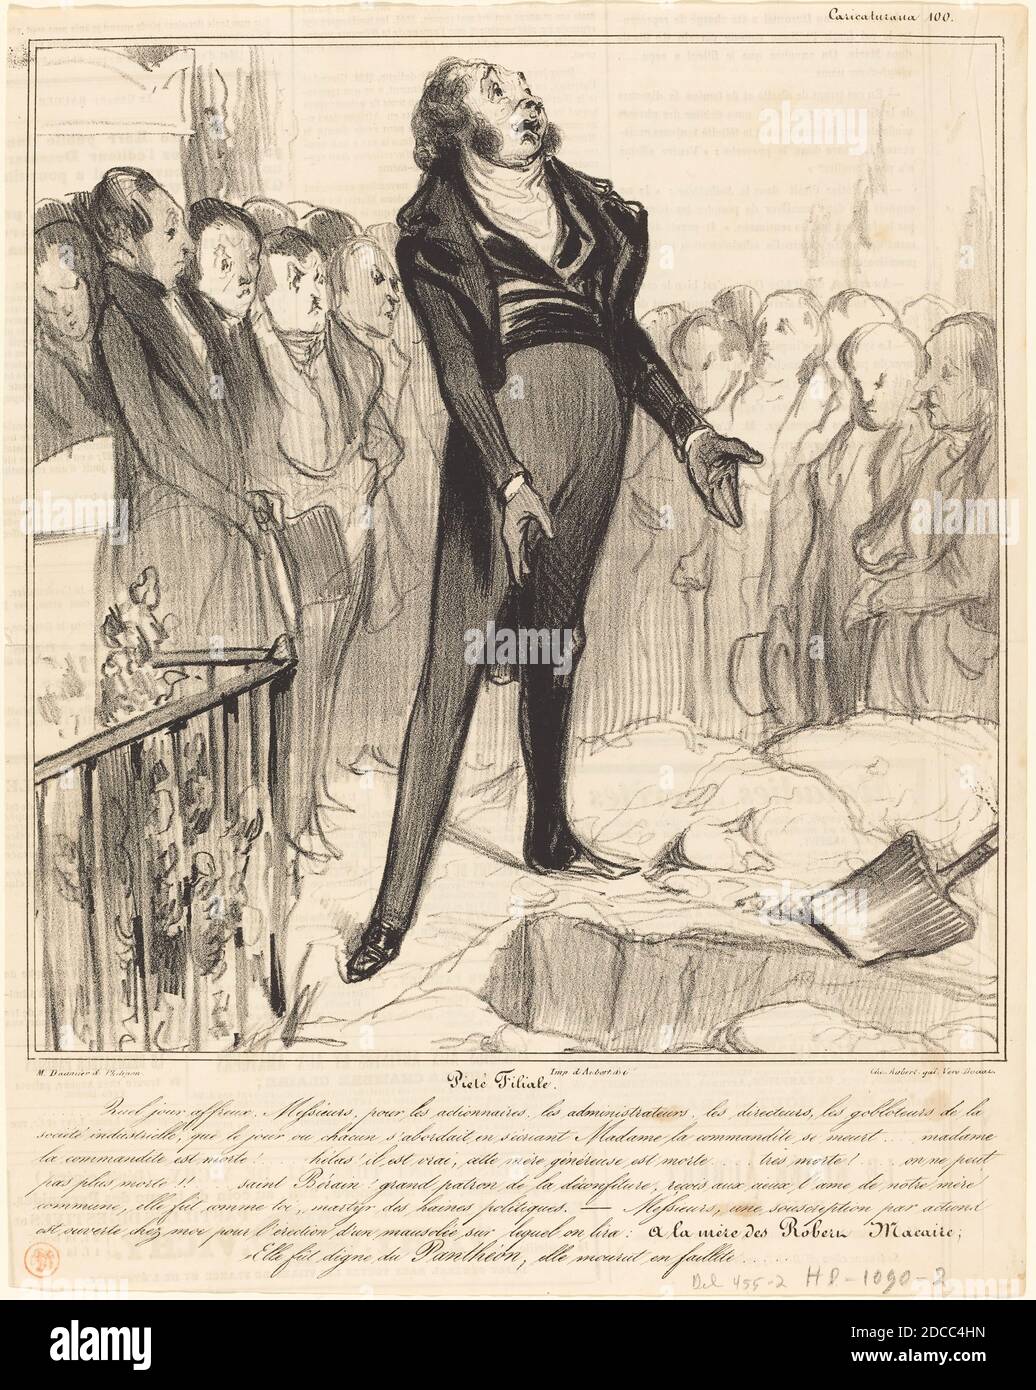 Honoré Daumier, (artist), French, 1808 - 1879, Piétié Filiale, Caricaturana: pl.100, (series), 1838, lithograph on newsprint Stock Photo